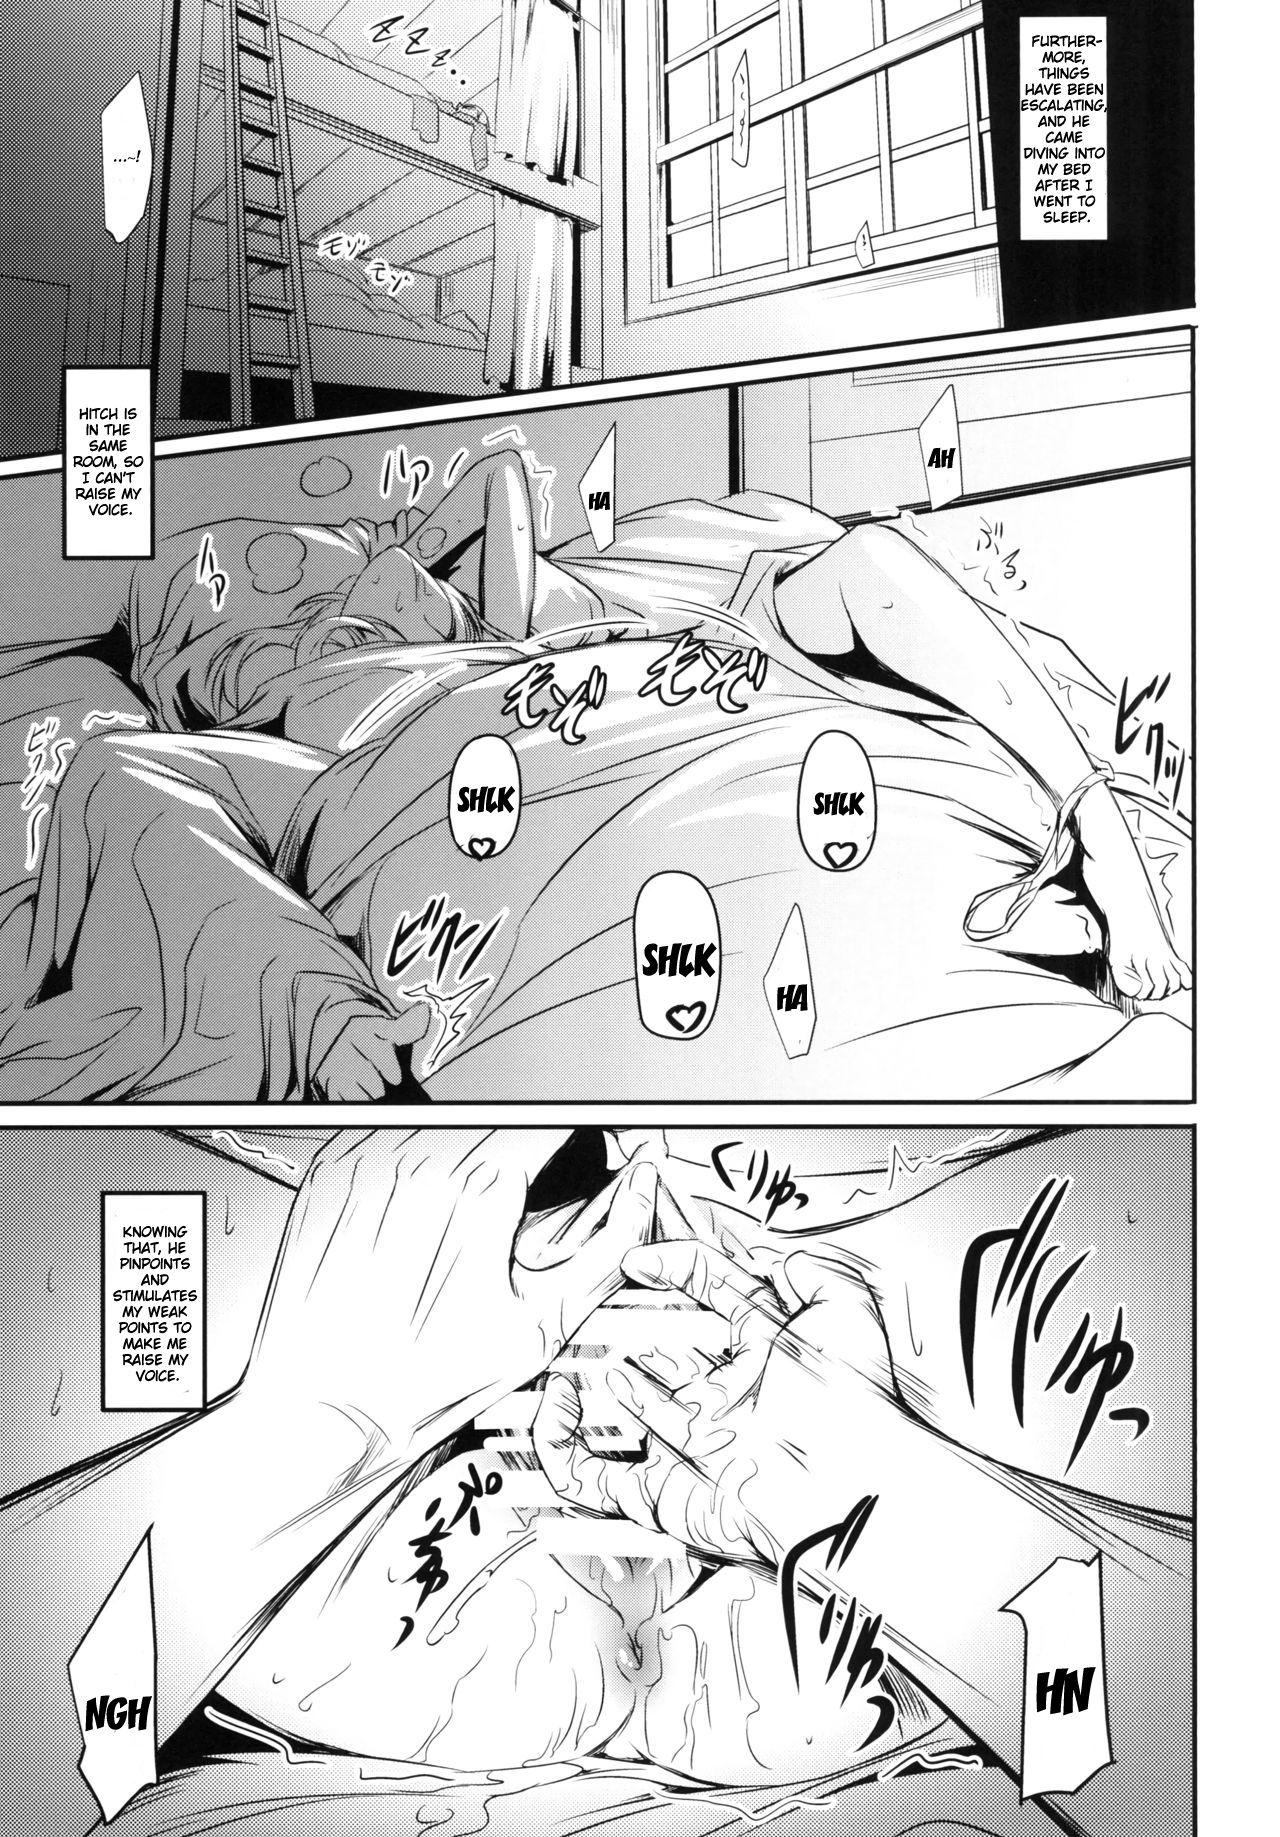 Licking Hekinai Chousa - Shingeki no kyojin Free Blow Job - Page 9